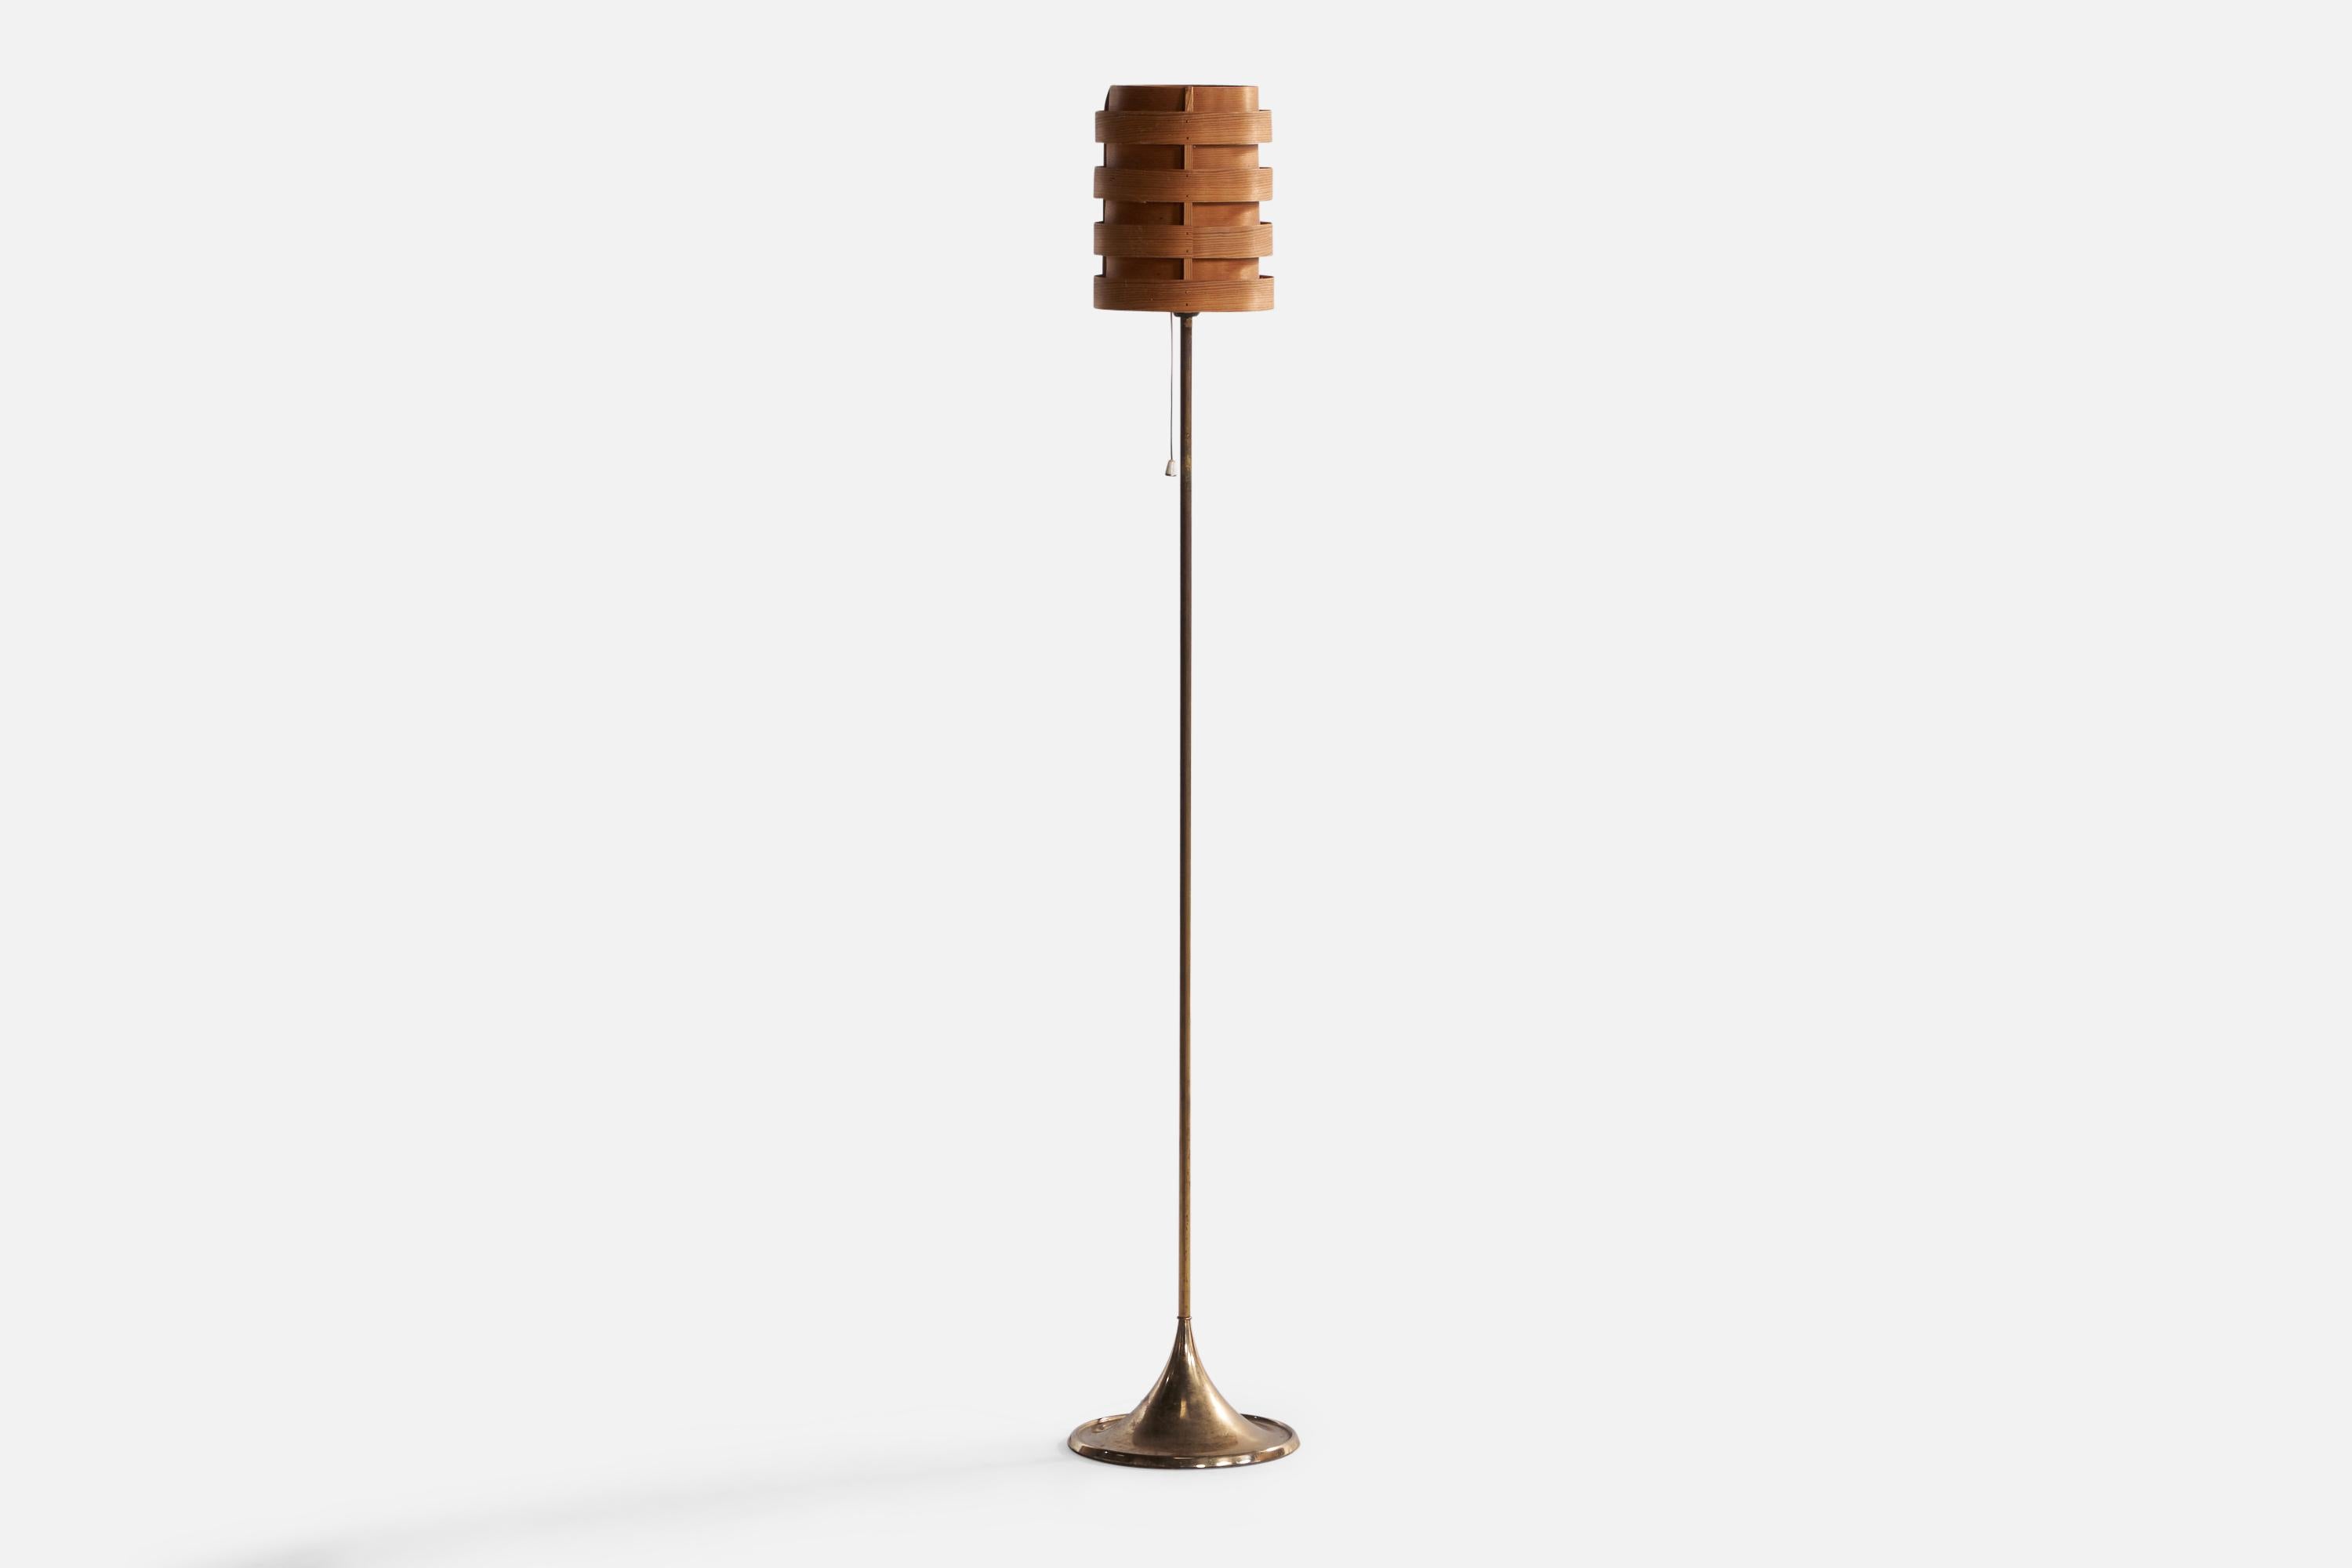 Lampadaire en laiton et en pin moulé, conçu et produit en Suède, années 1960.

Abat-jour vintage assorti, conçu par Hans-Agne Jakobsson.

Dimensions globales (pouces) : 44.5